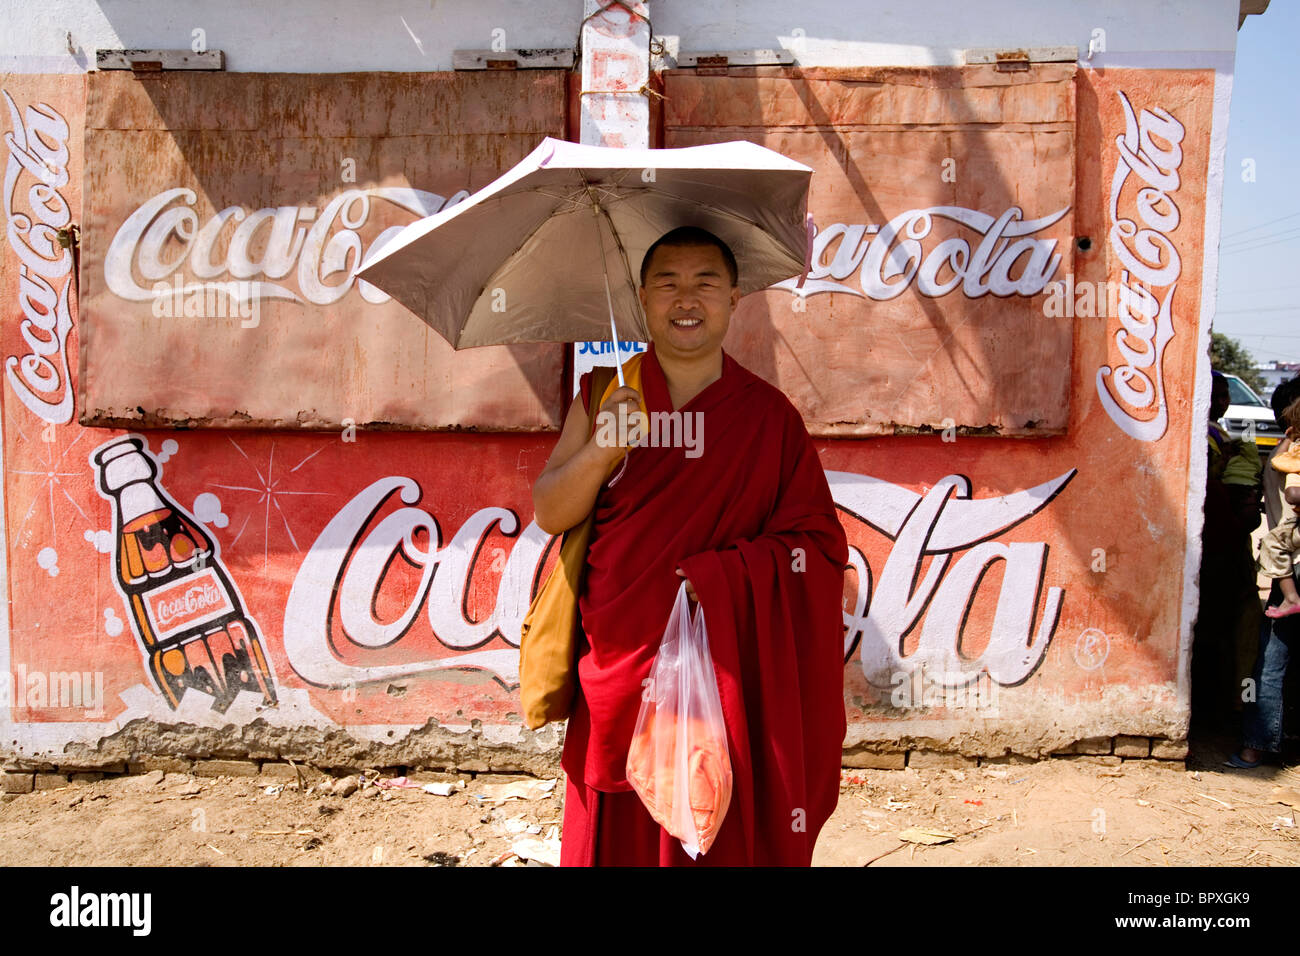 Porträt eines tibetisch-buddhistischen Mönchs gegen eine Wand sponsoring Coca Cola, Bodhgaya, Bihar, Indien. Stockfoto